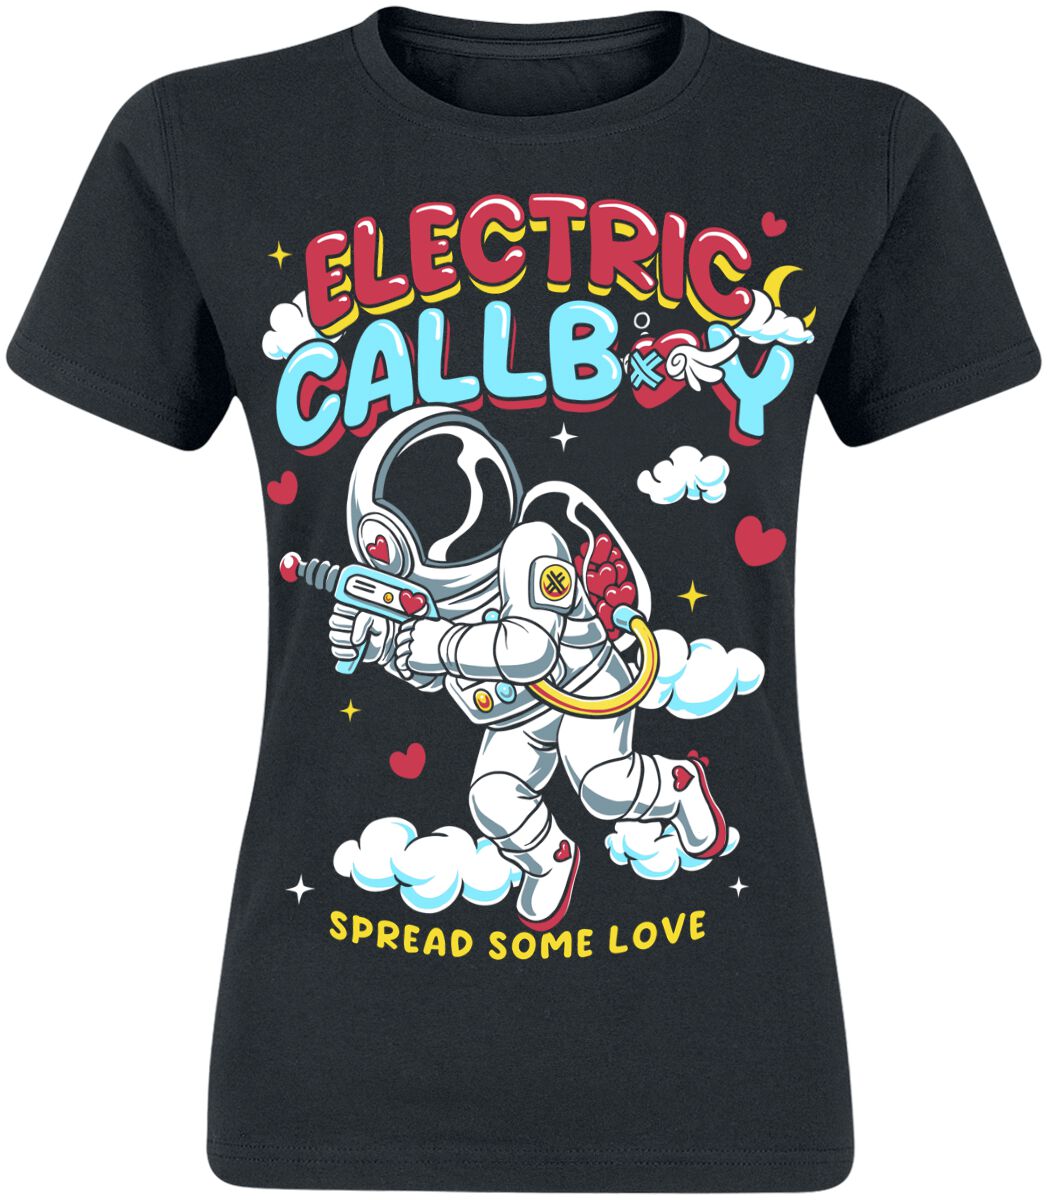 Electric Callboy T-Shirt - Spread Some Love - S bis XXL - für Damen - Größe XXL - schwarz  - EMP exklusives Merchandise!